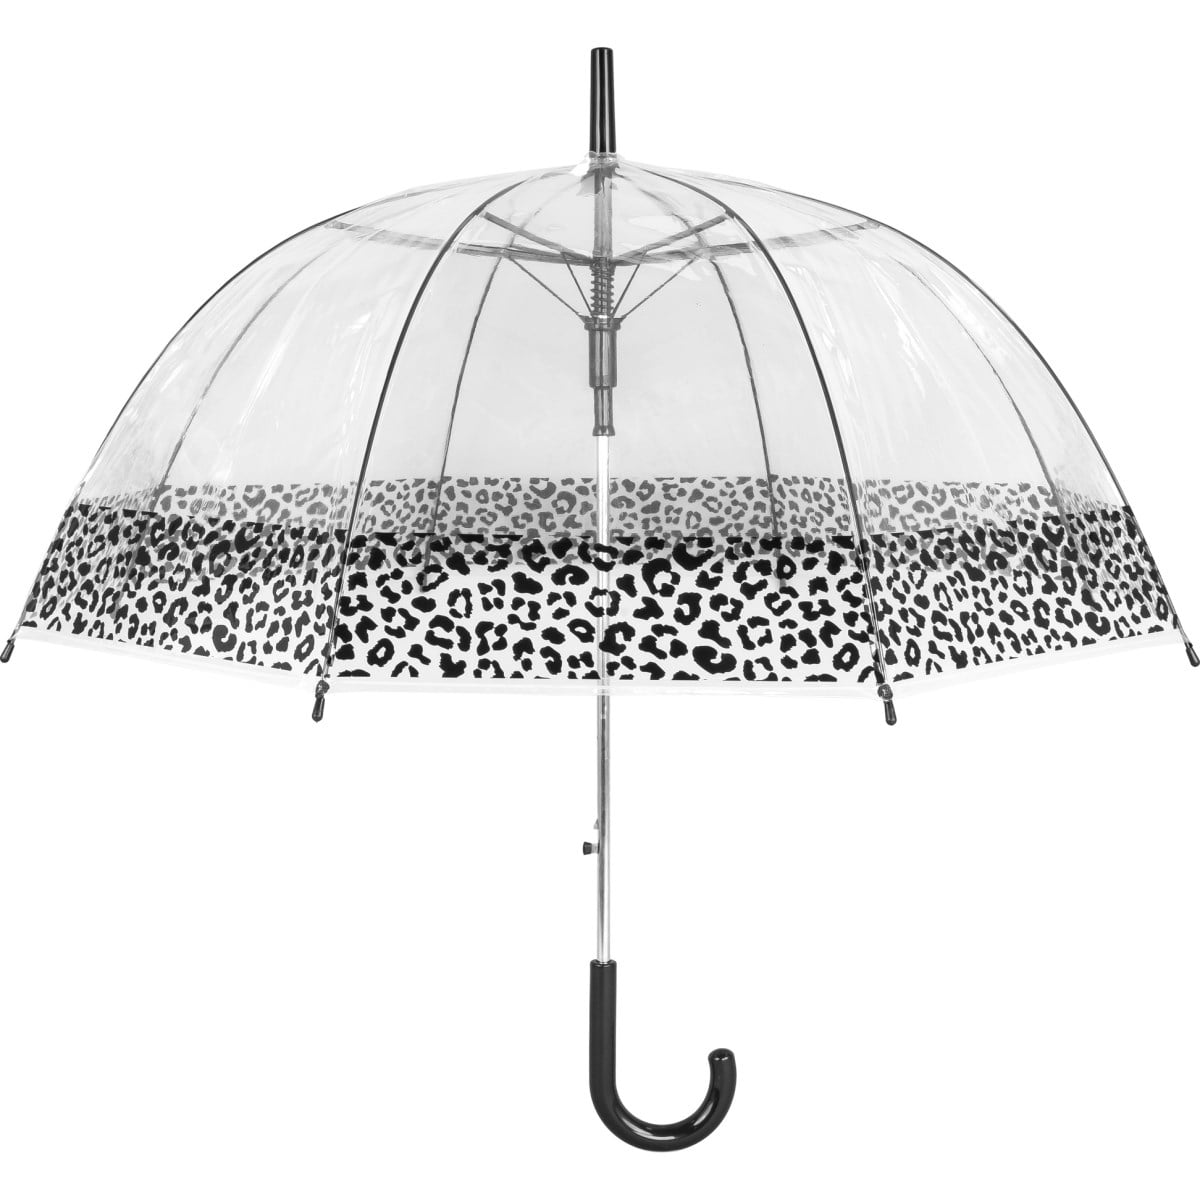 Ladies Gorgeous Brown & Black Tiger Print Umbrella Walking Length Ideal Gift 